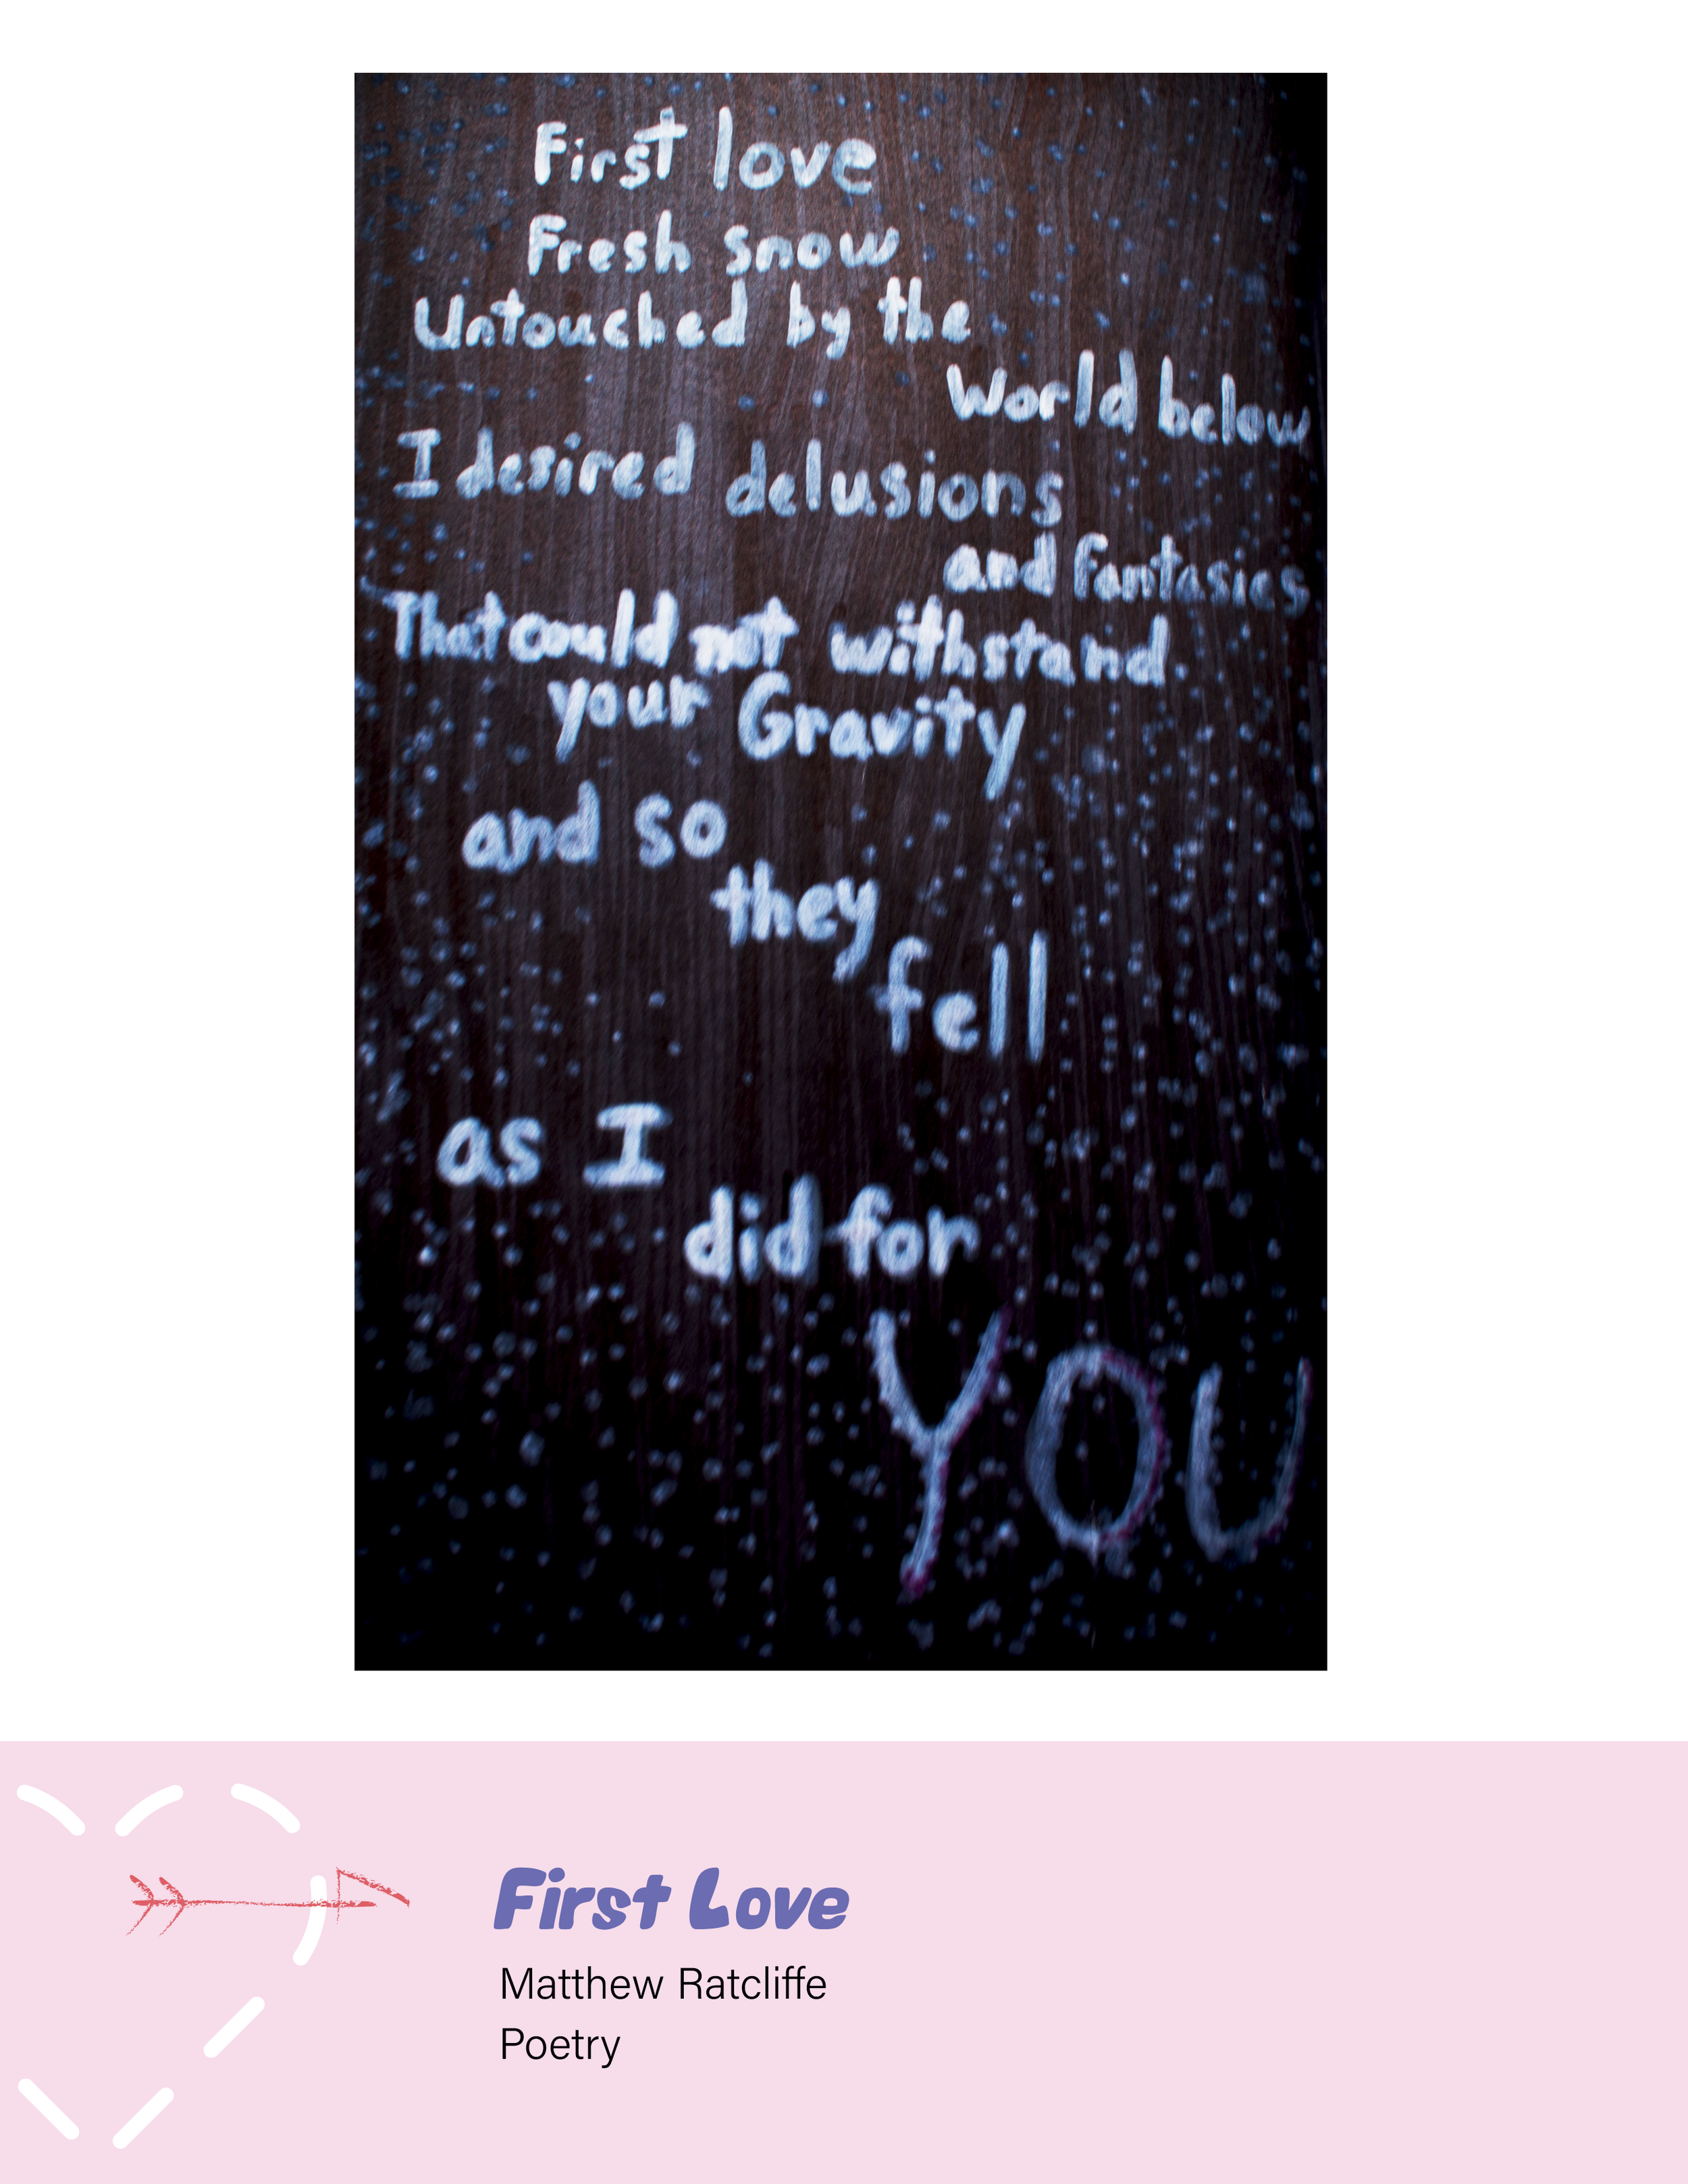 "First Love" by Matthew Ratcliffe